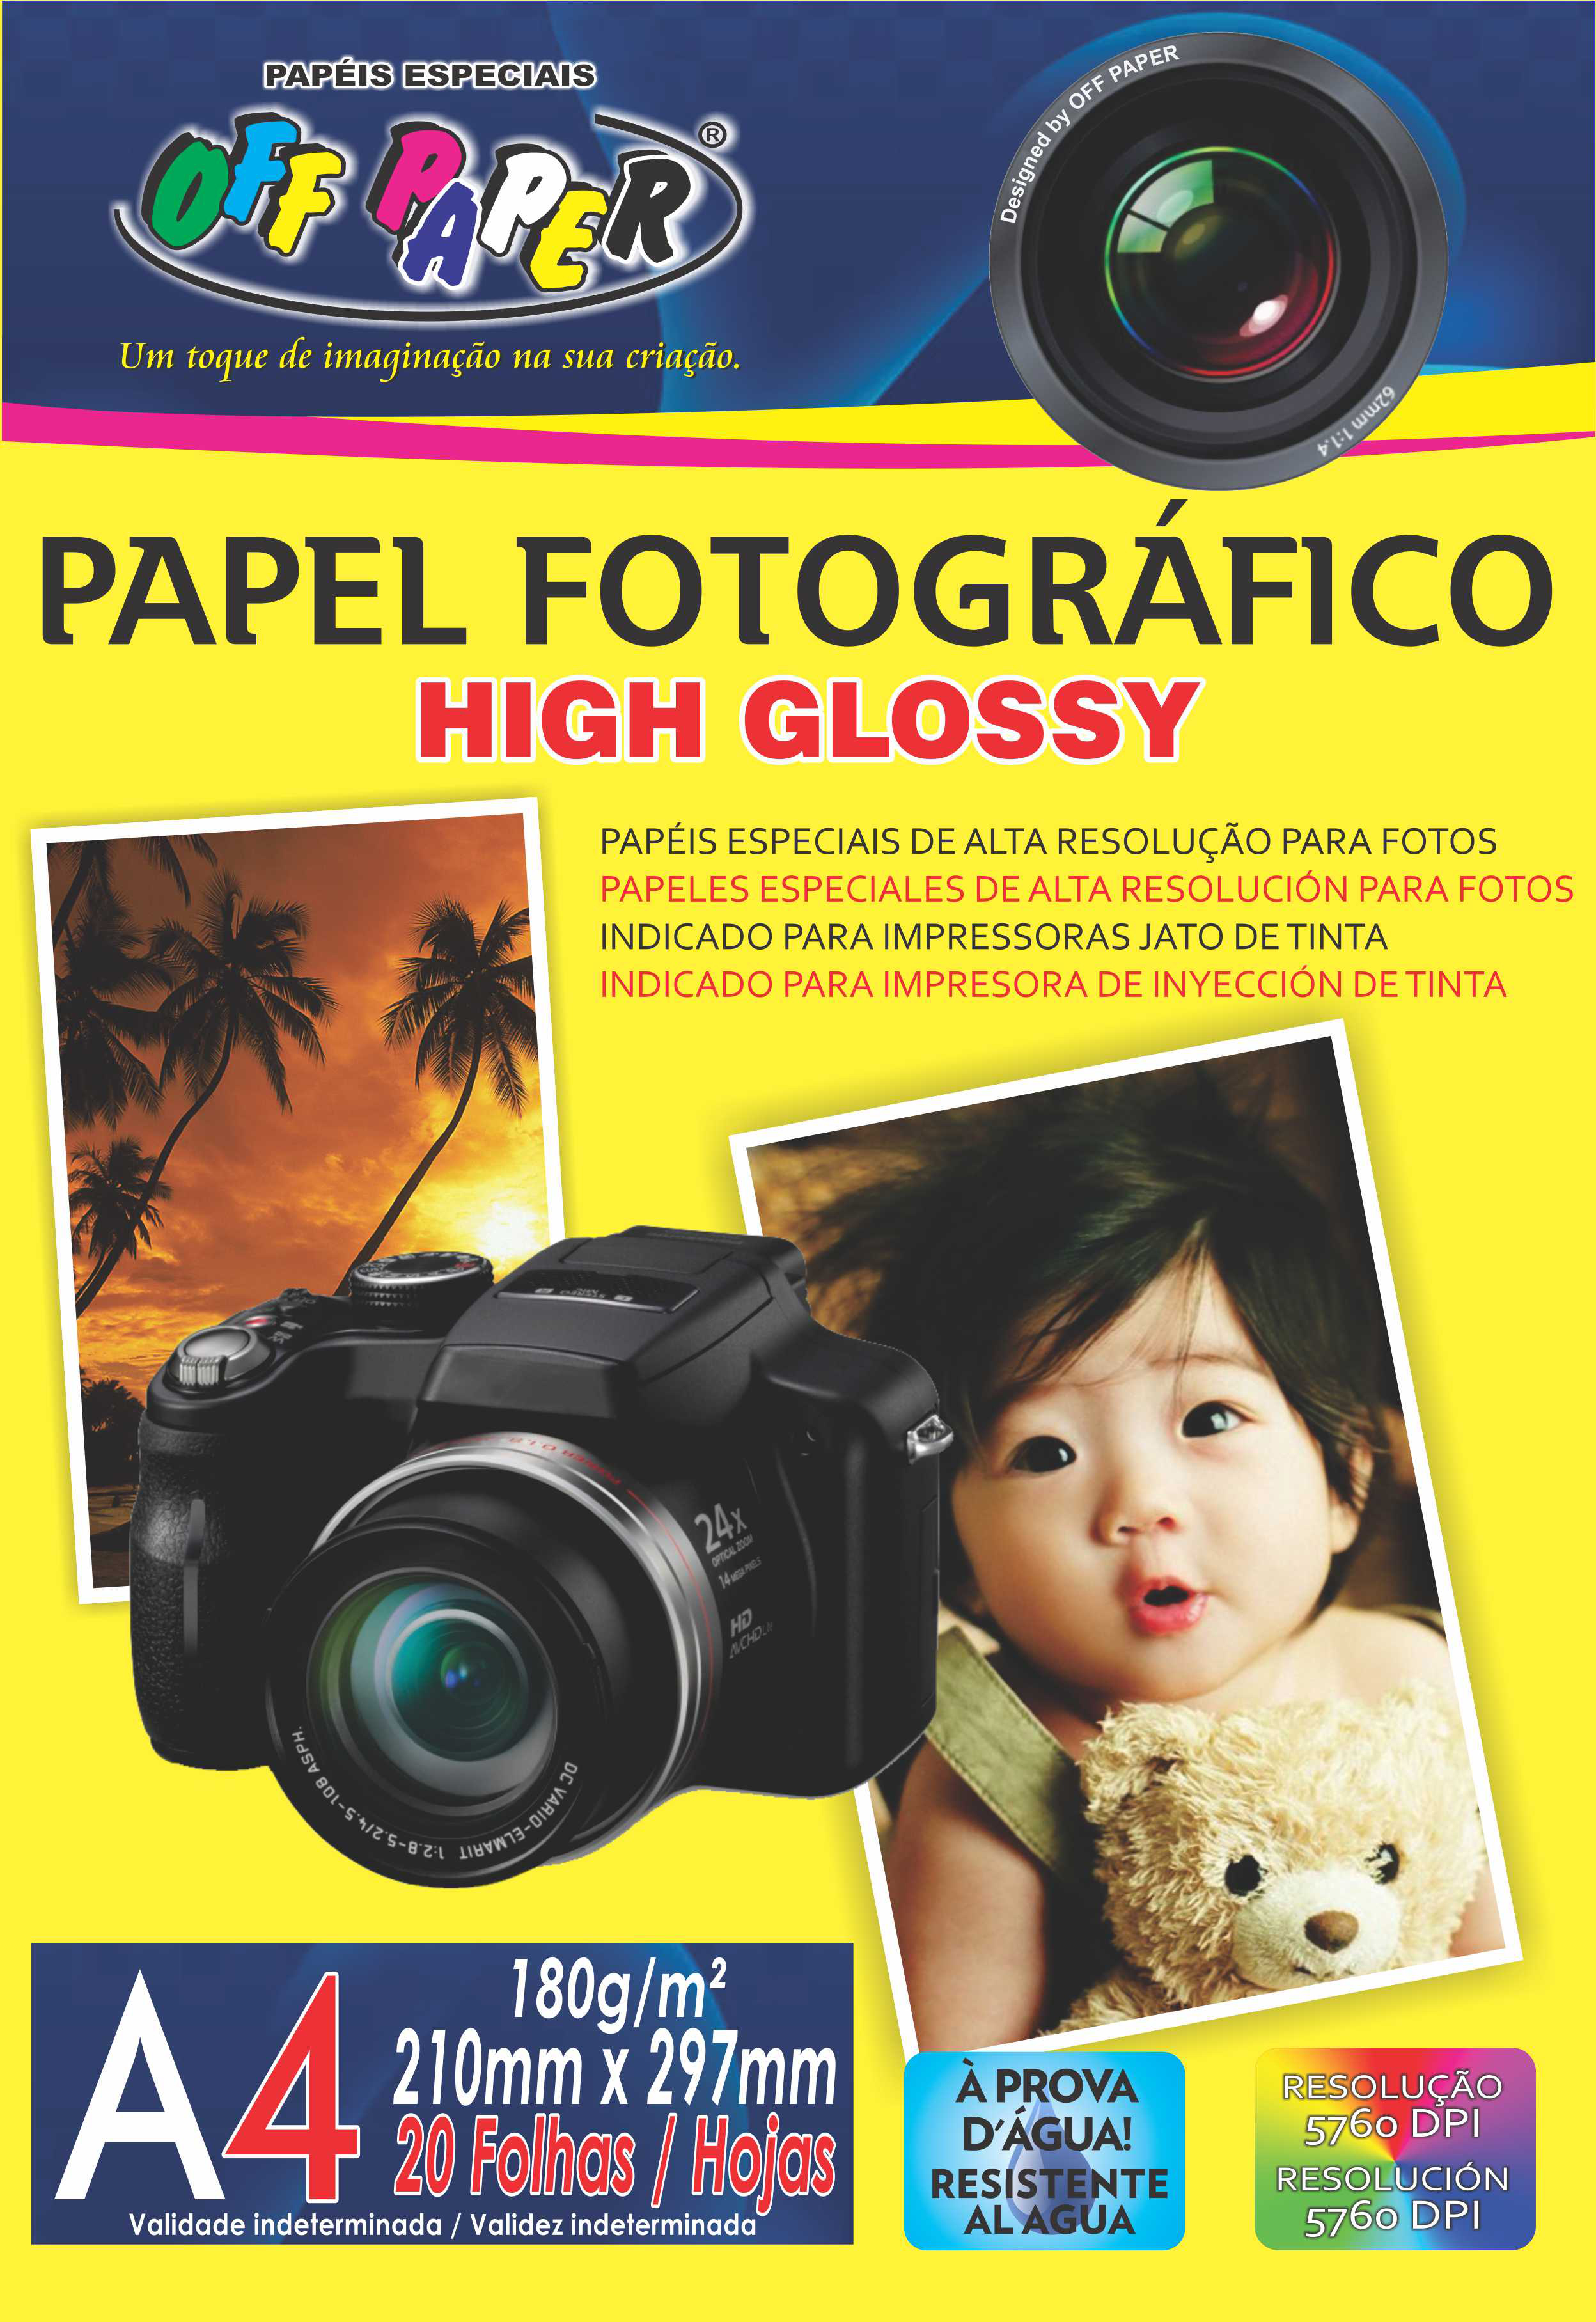 Papel Fotográfico High Glossy 180g- A4 com 20 Folhas